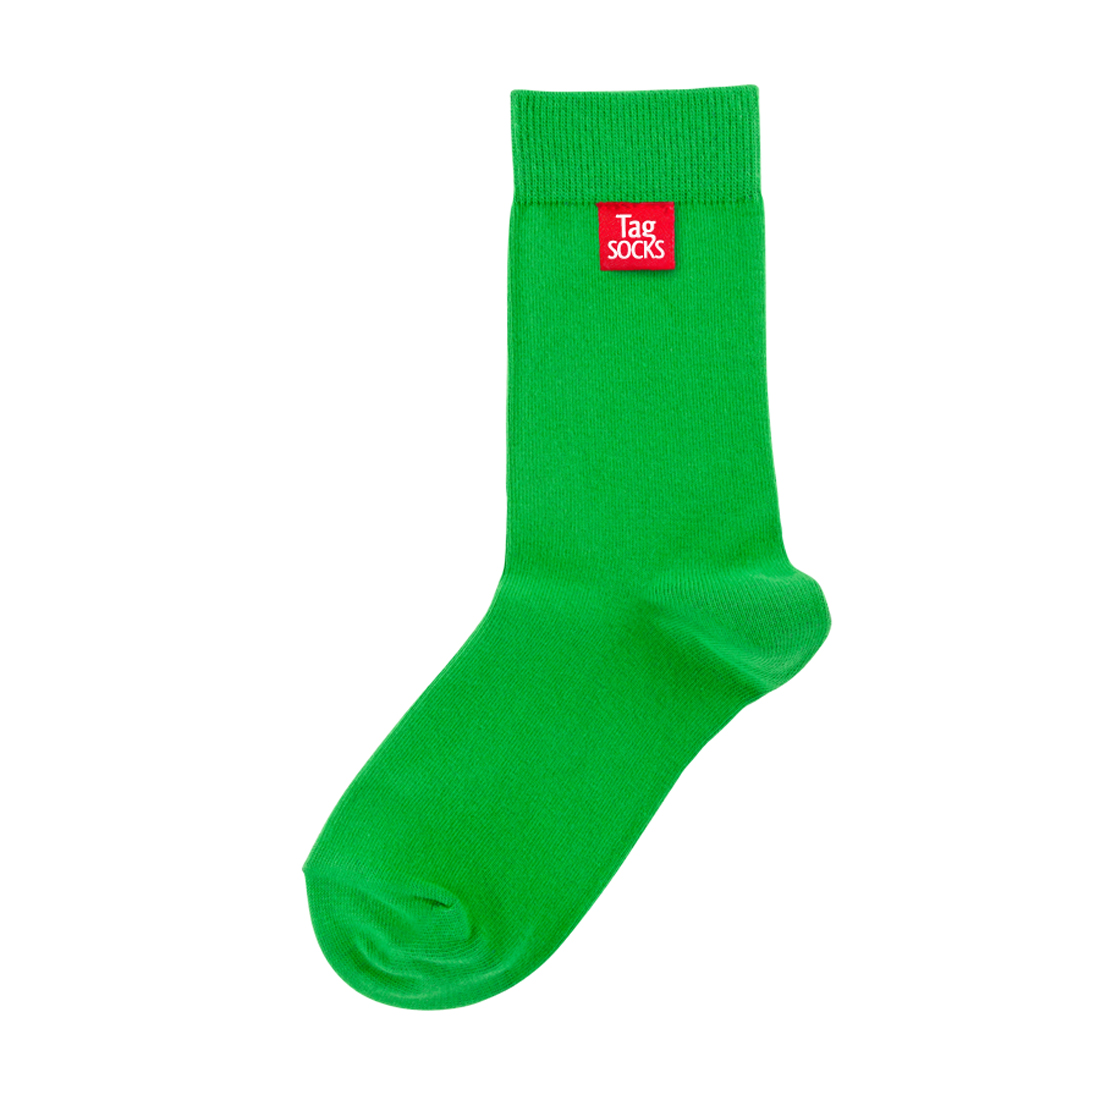 Green socks - Tag Socks - All Green